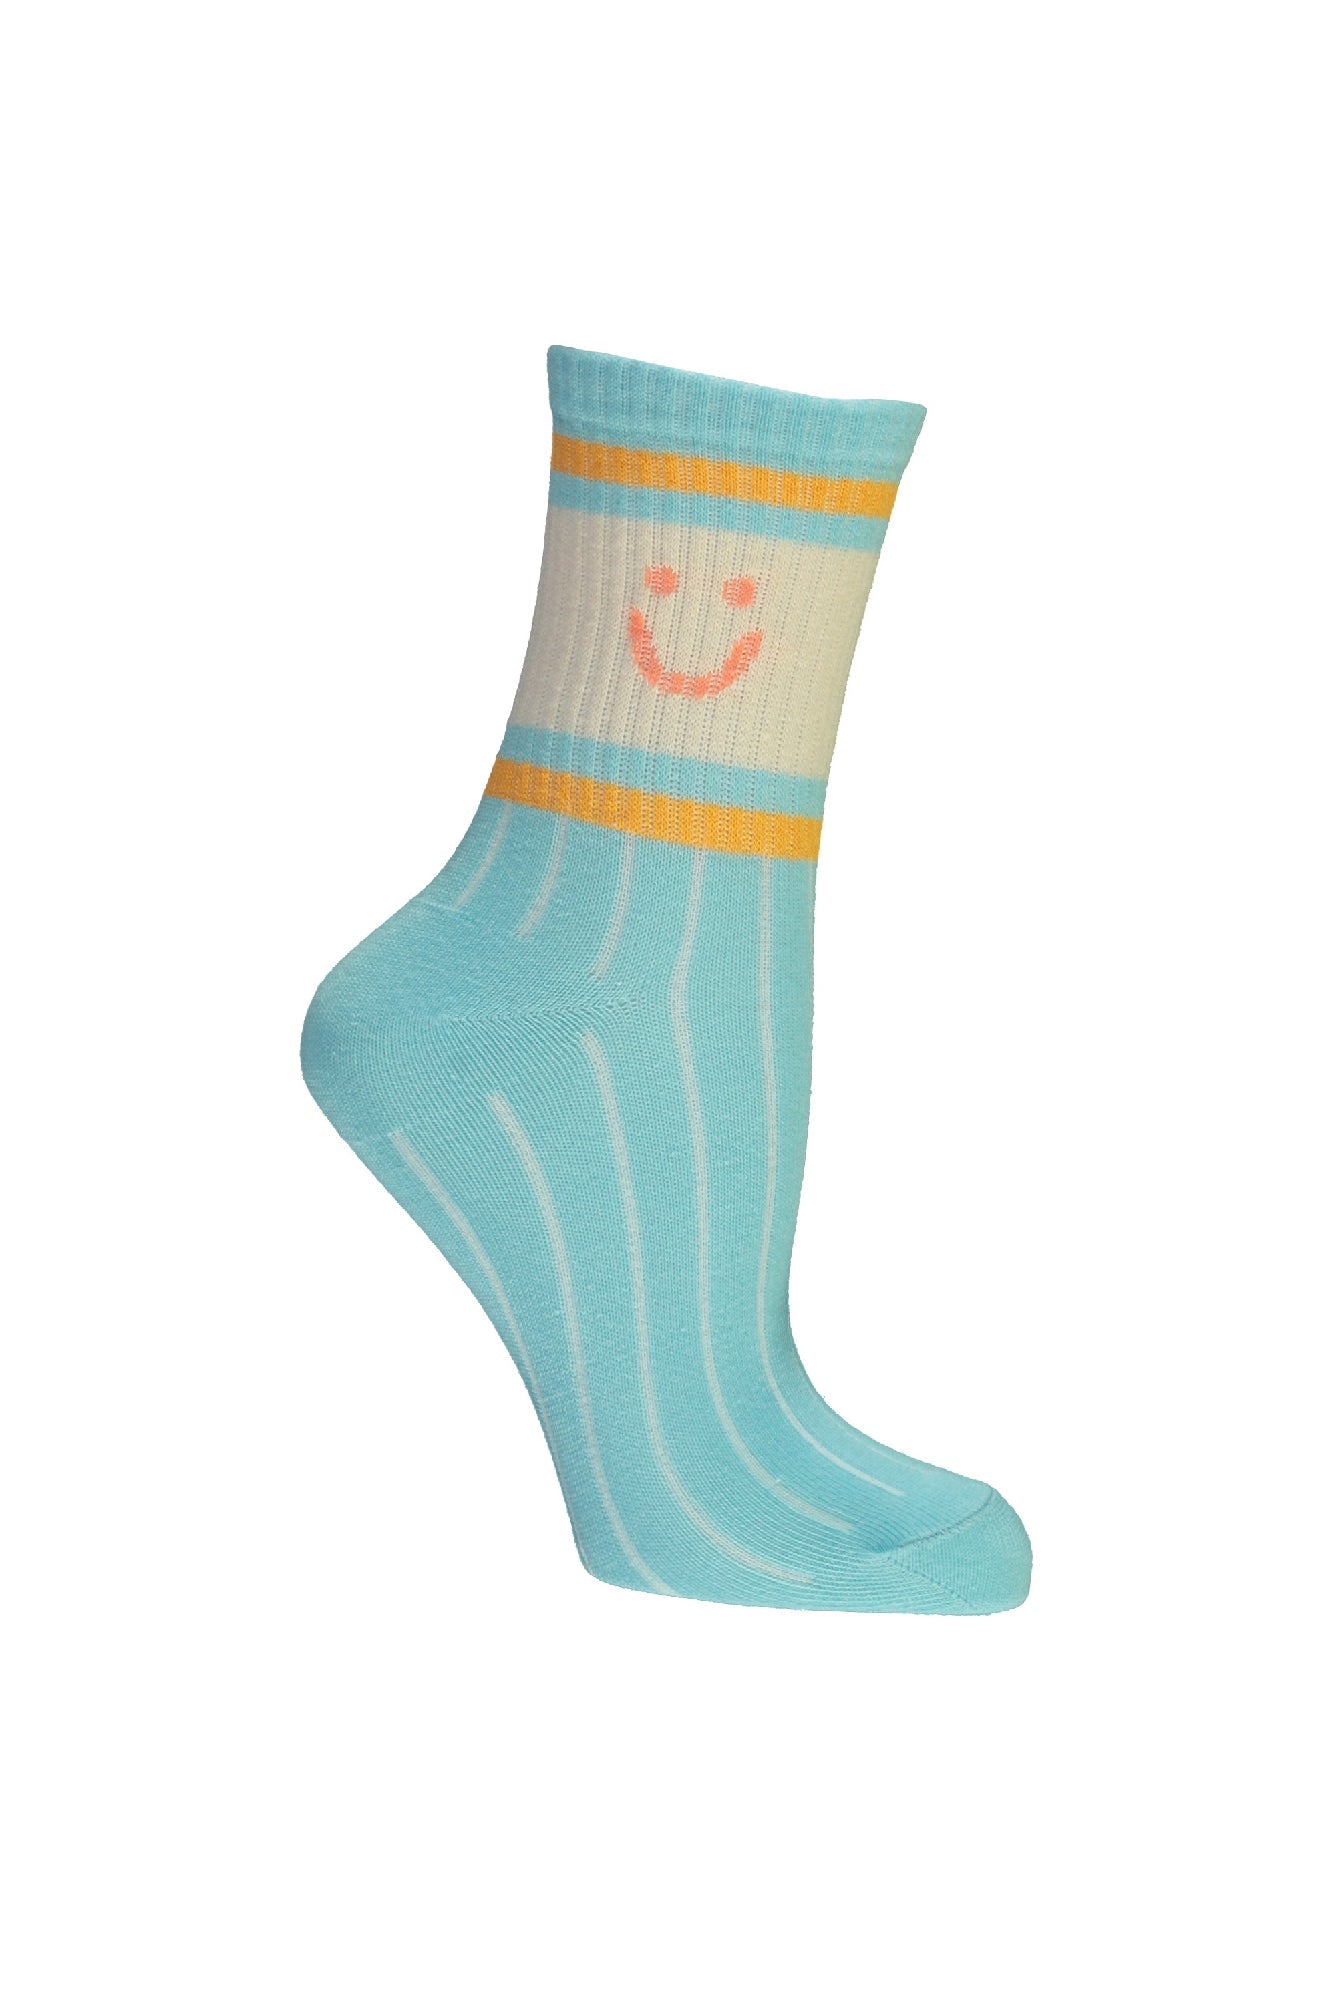 Meisjes Riley sporty Smiley sock van  in de kleur Sky High in maat 122-140.